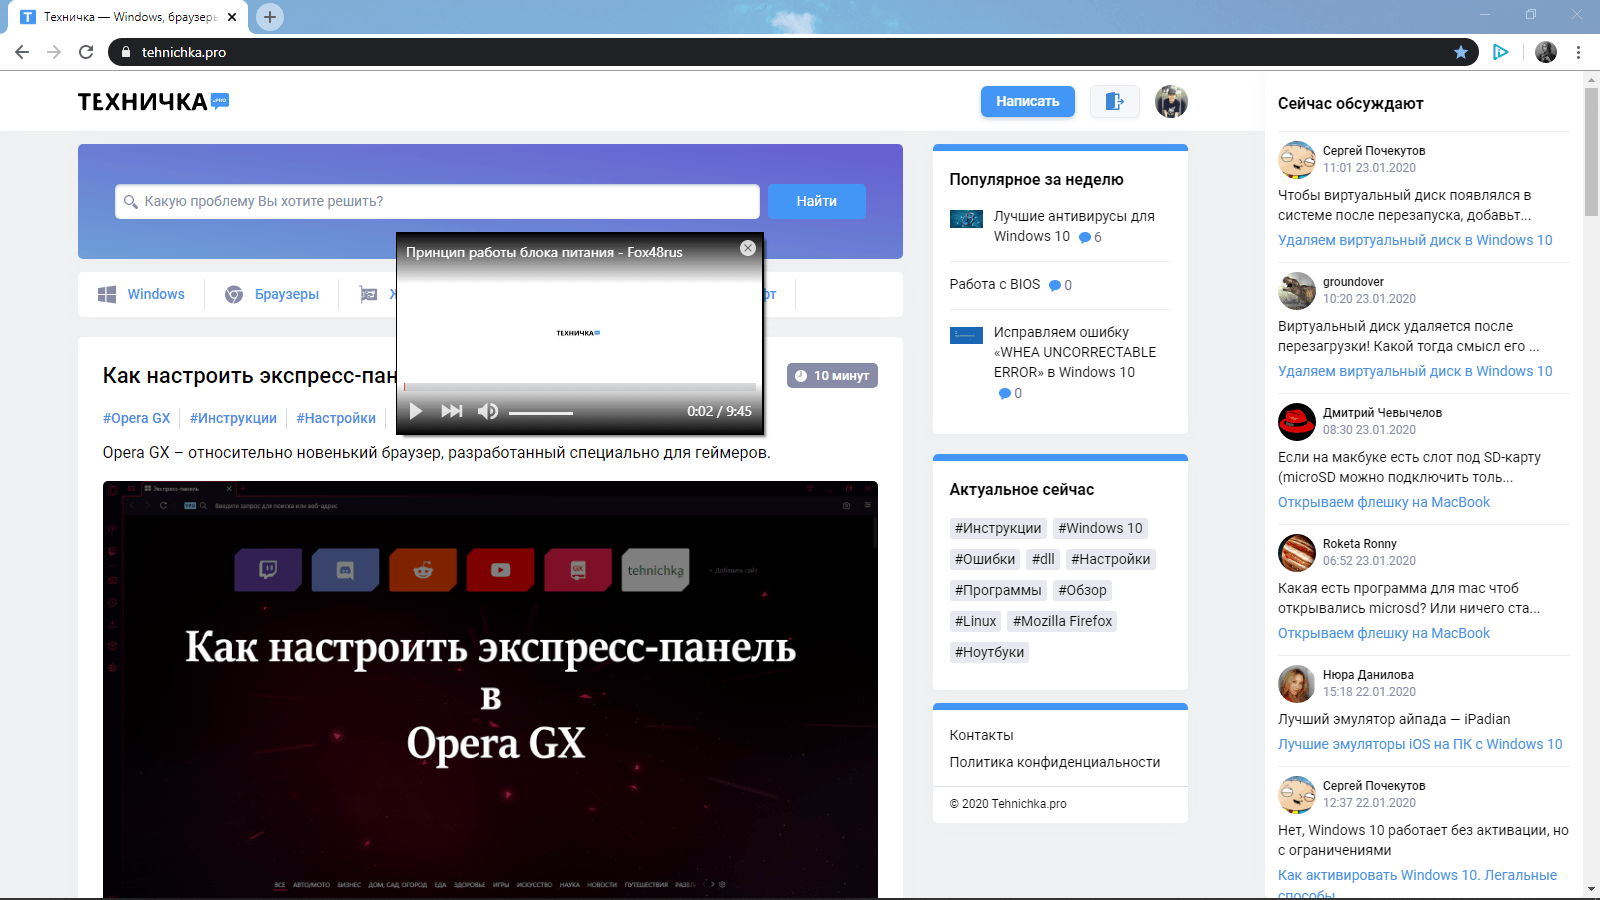 Отображение в Opera GX видео поверх других браузеров